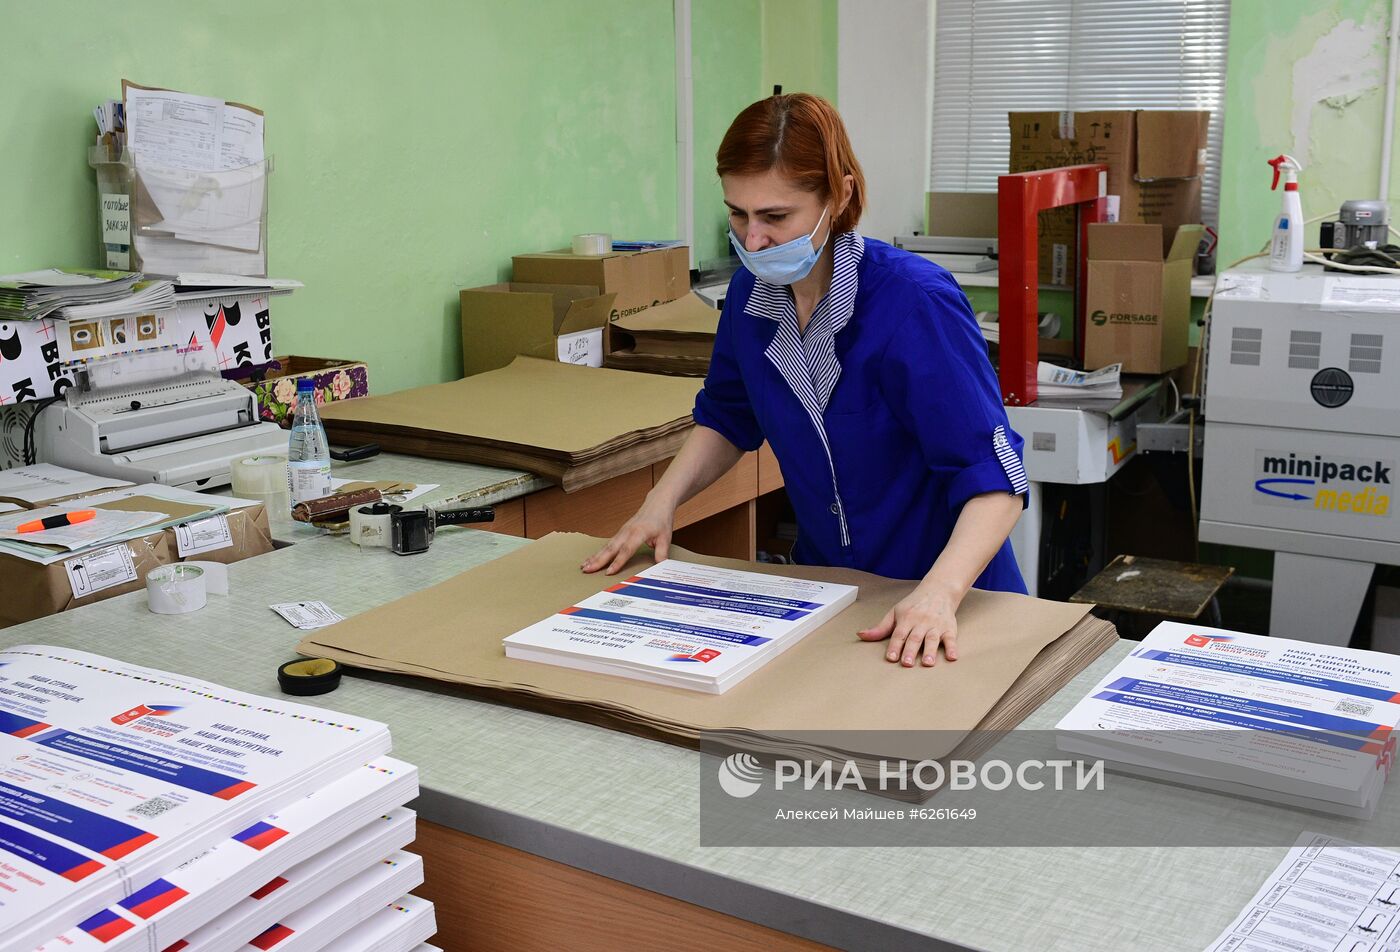 Печать бюллетеней к голосованию по поправкам в Конституцию РФ